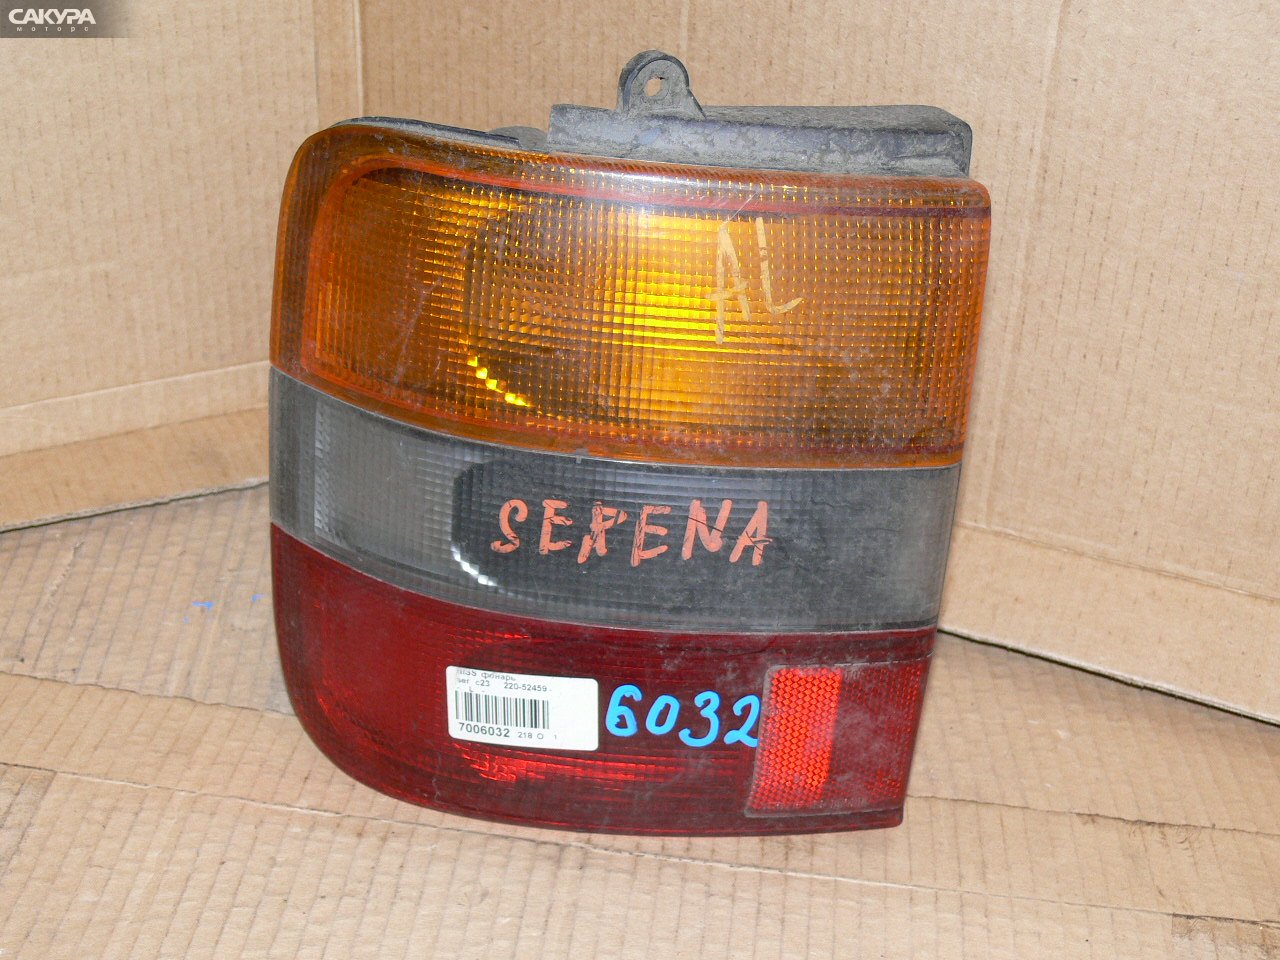 Фонарь стоп-сигнала левый Nissan Serena KBC23 220-52459: купить в Сакура Иркутск.